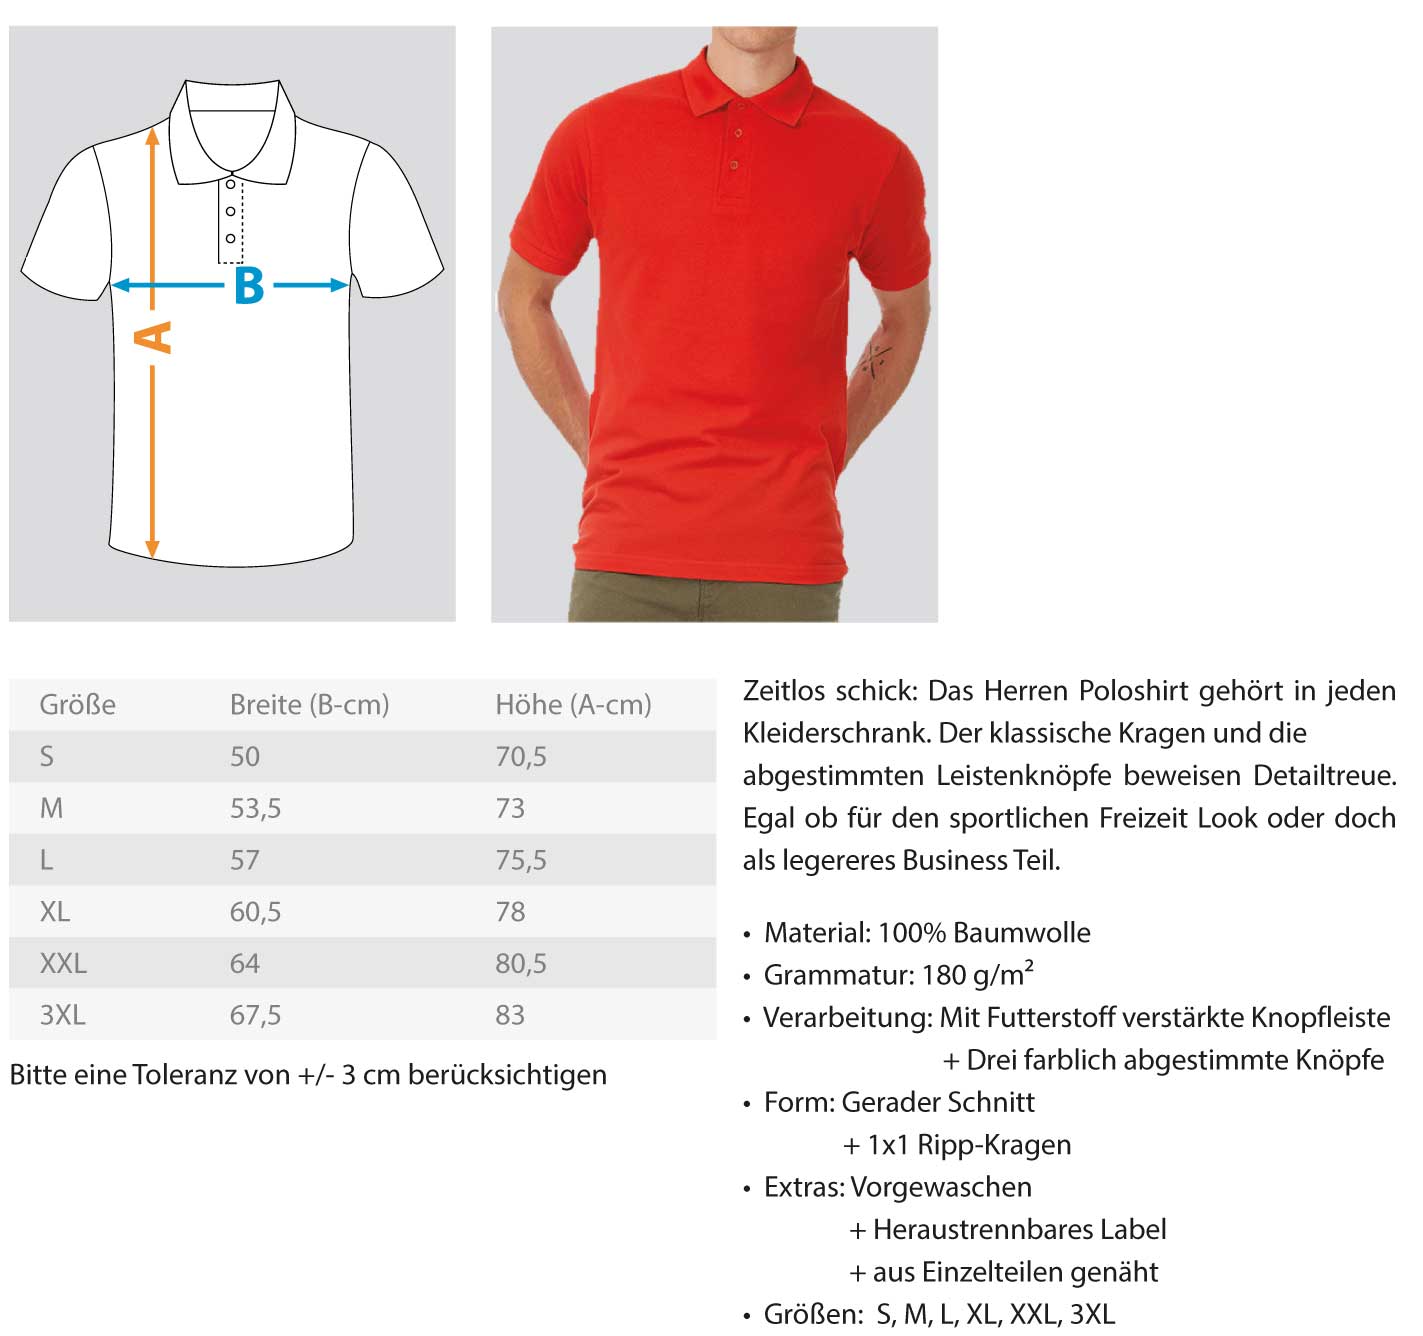 Dachdecker Polo Shirt Rooferking Version 1.0 €36.95 Rooferking